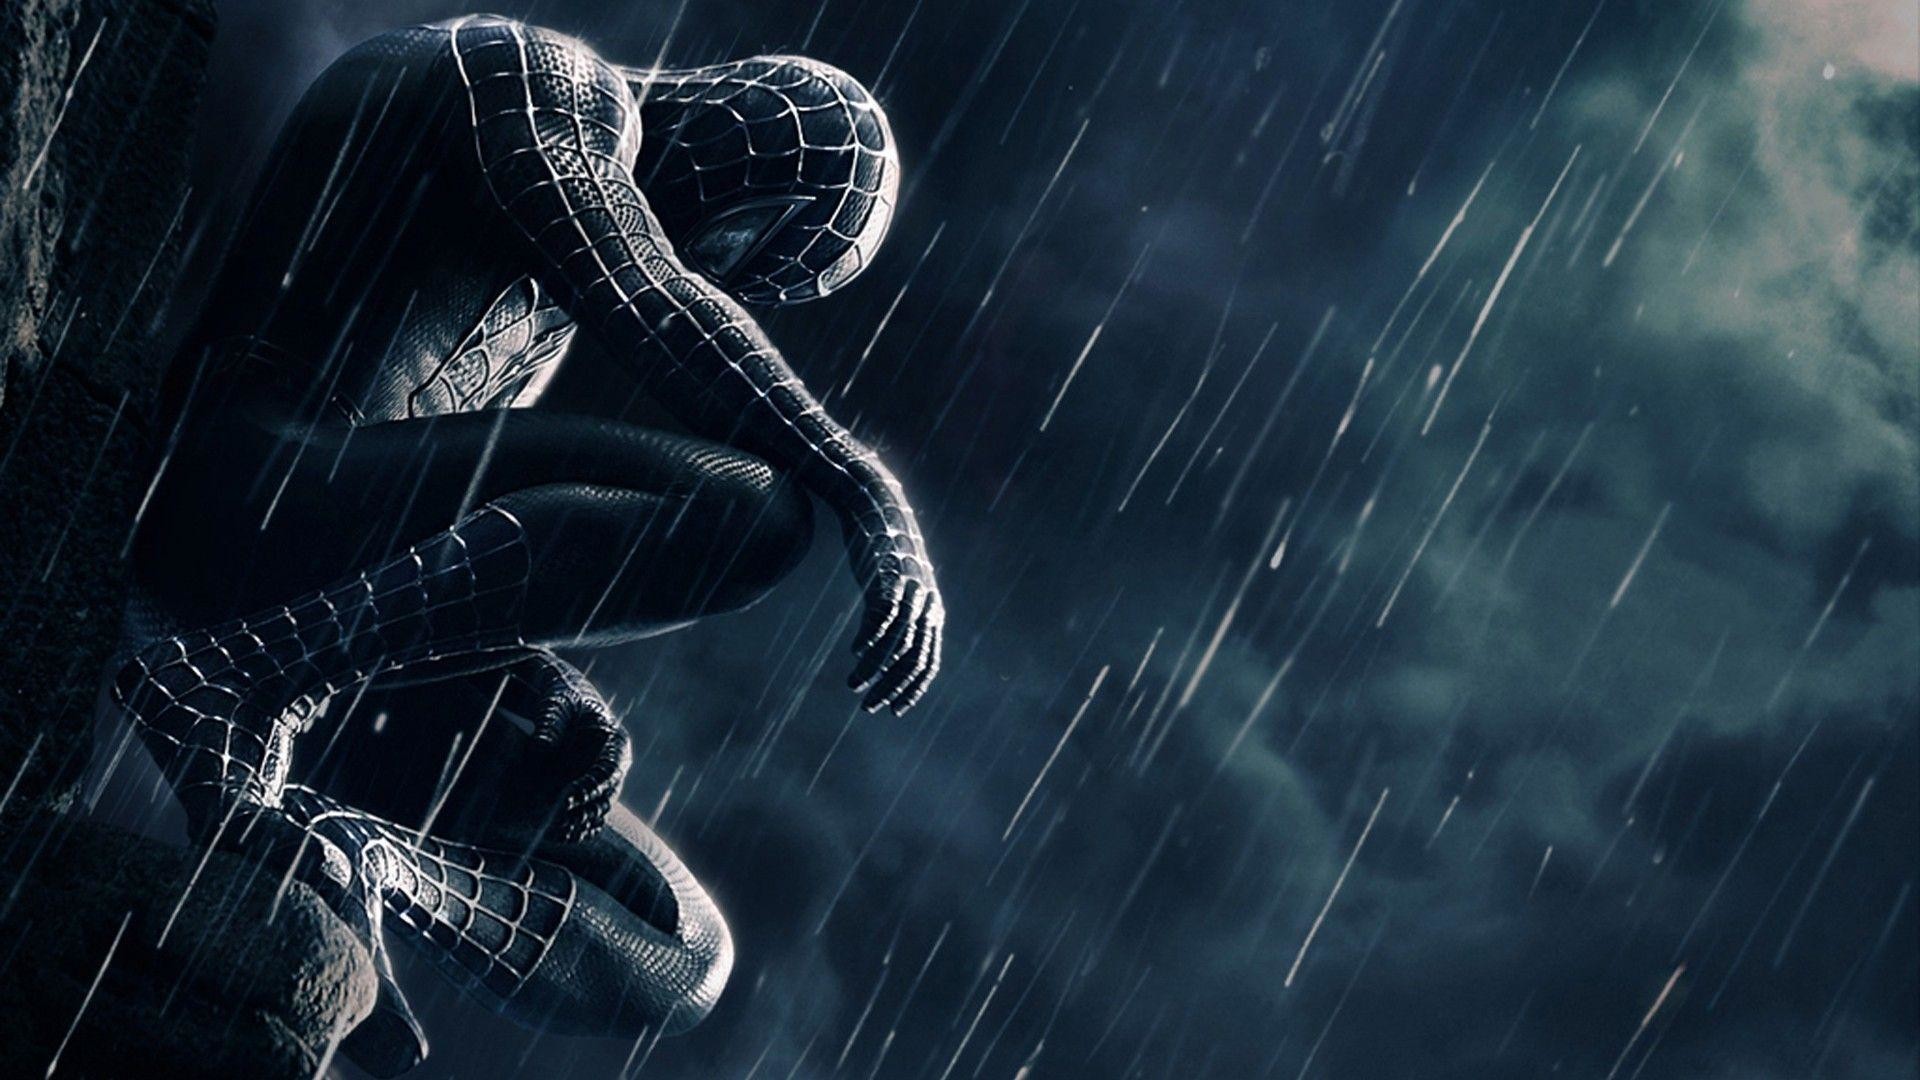 Spider Man HD Wallpapers 1080p – WallpaperSafari